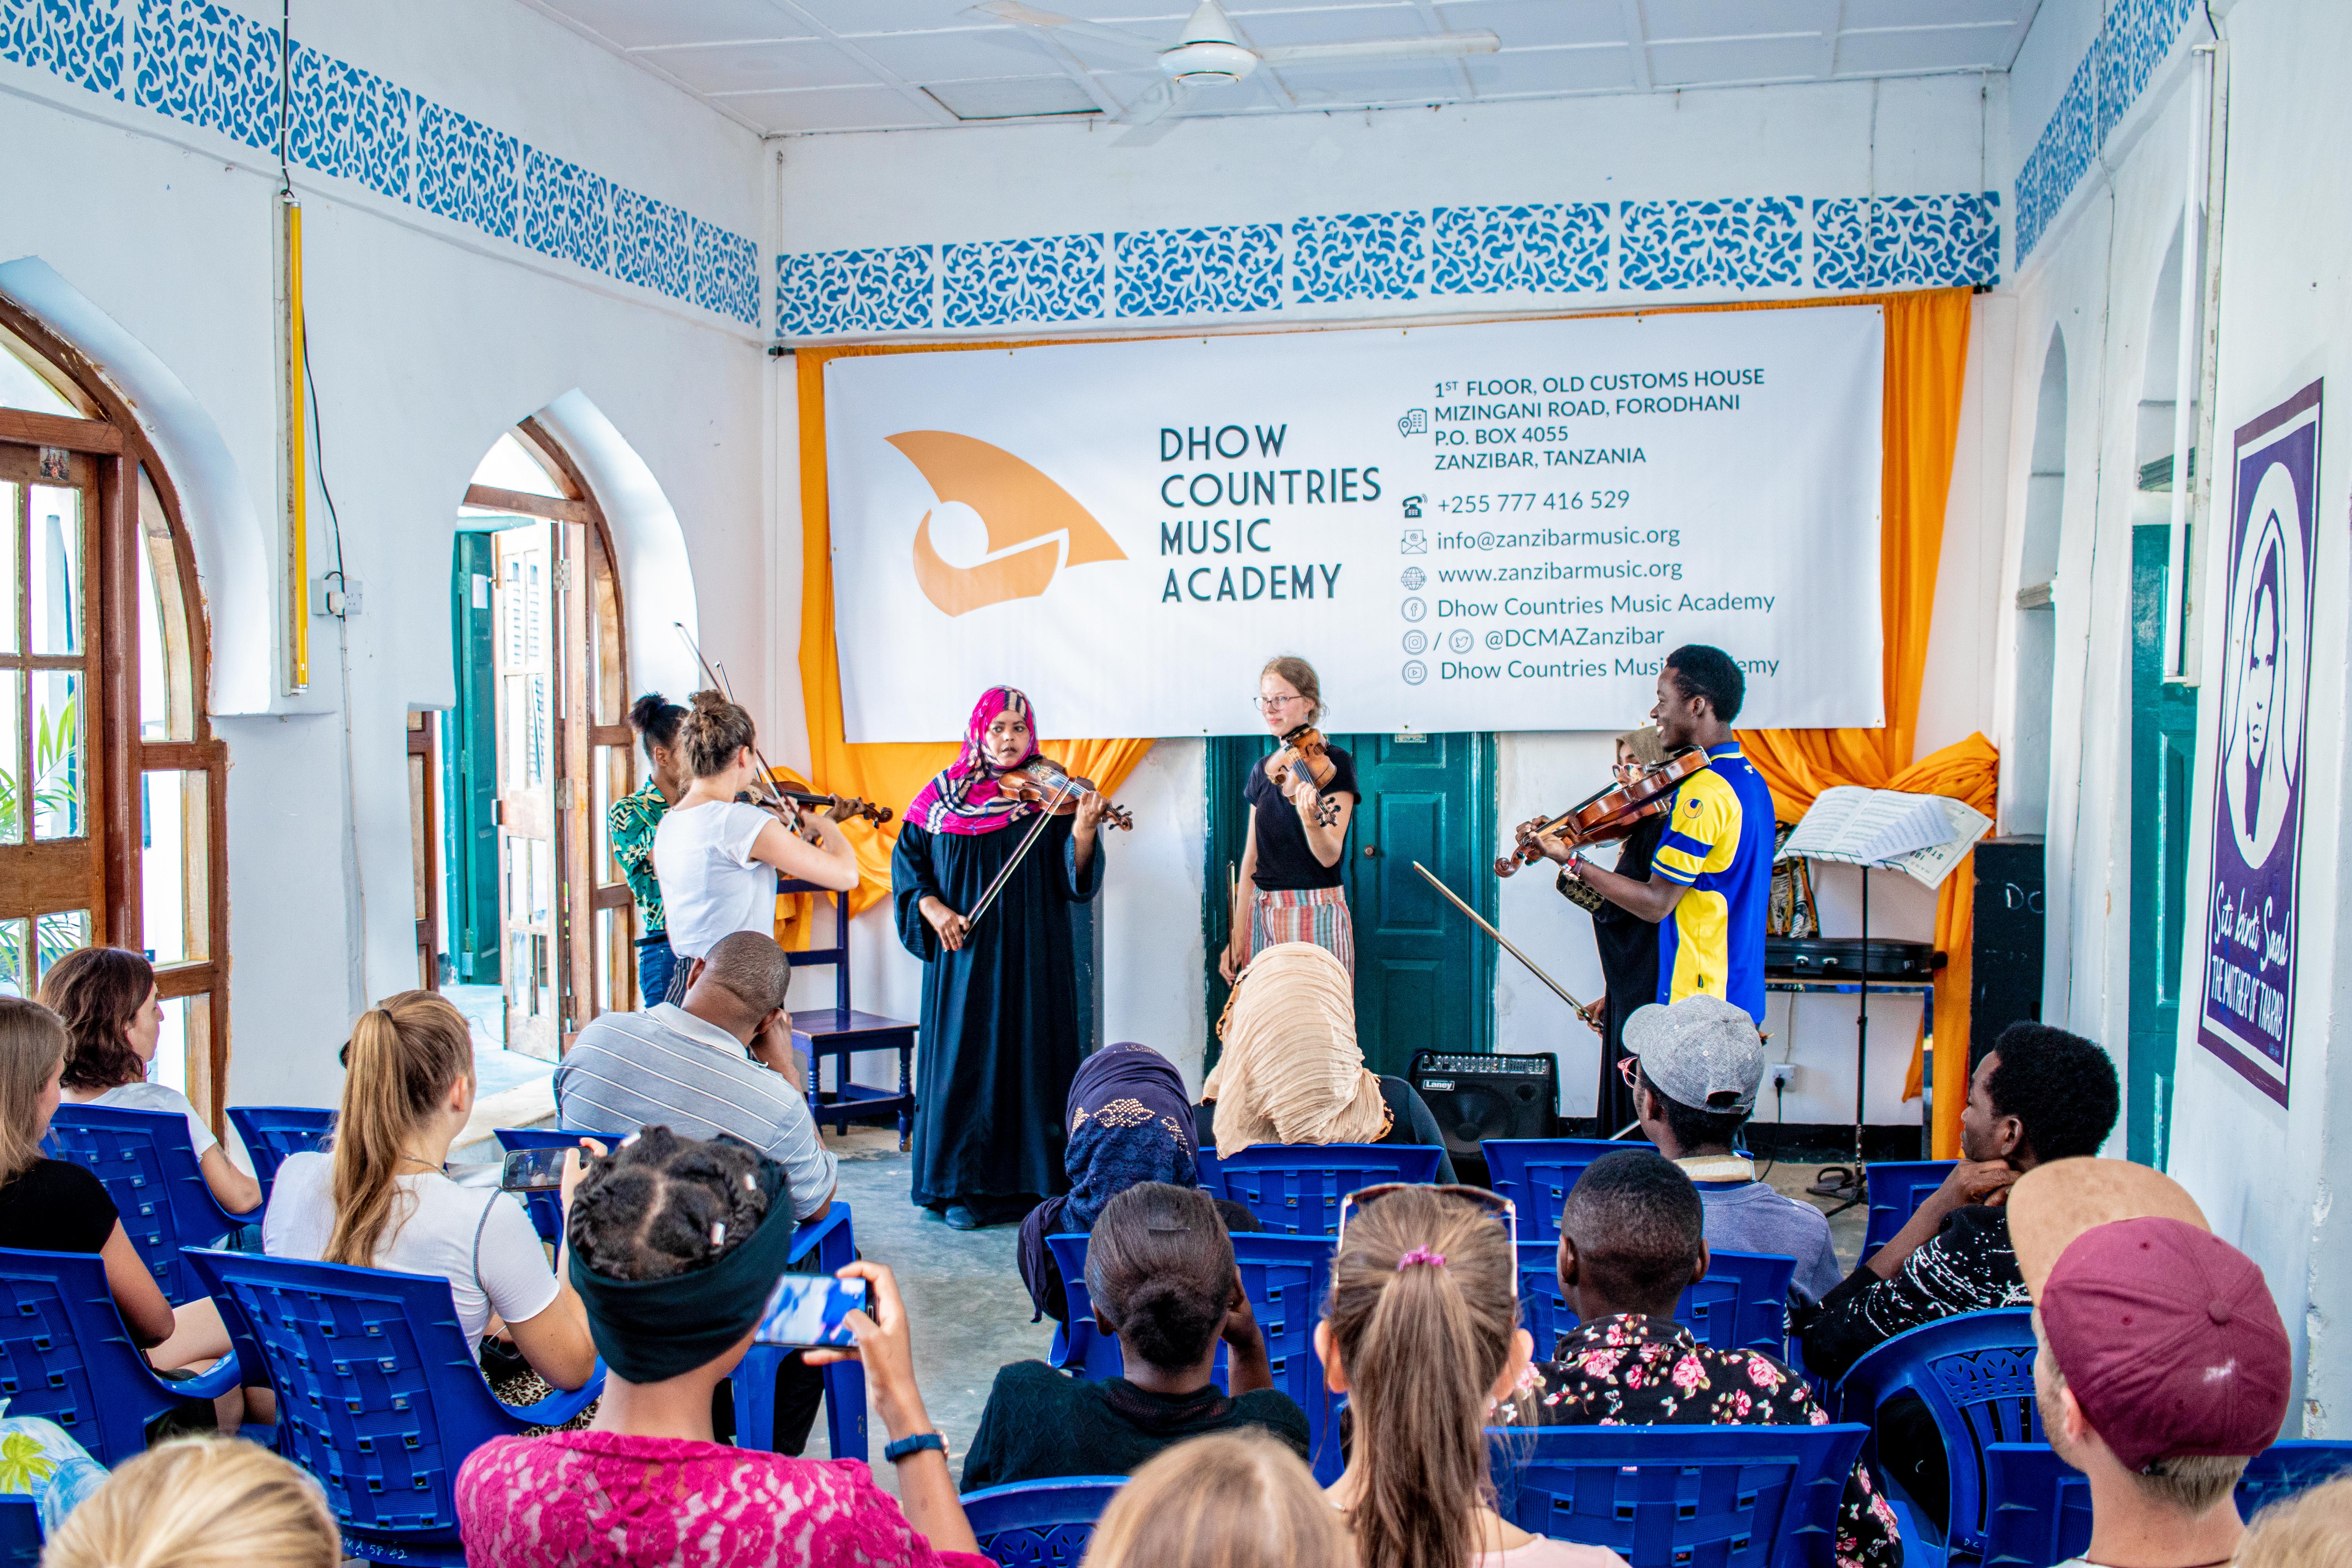 Un groupe de violonistes se produit à l'académie de musique de Zanzibar dans une salle aux tons bleu et blanc.